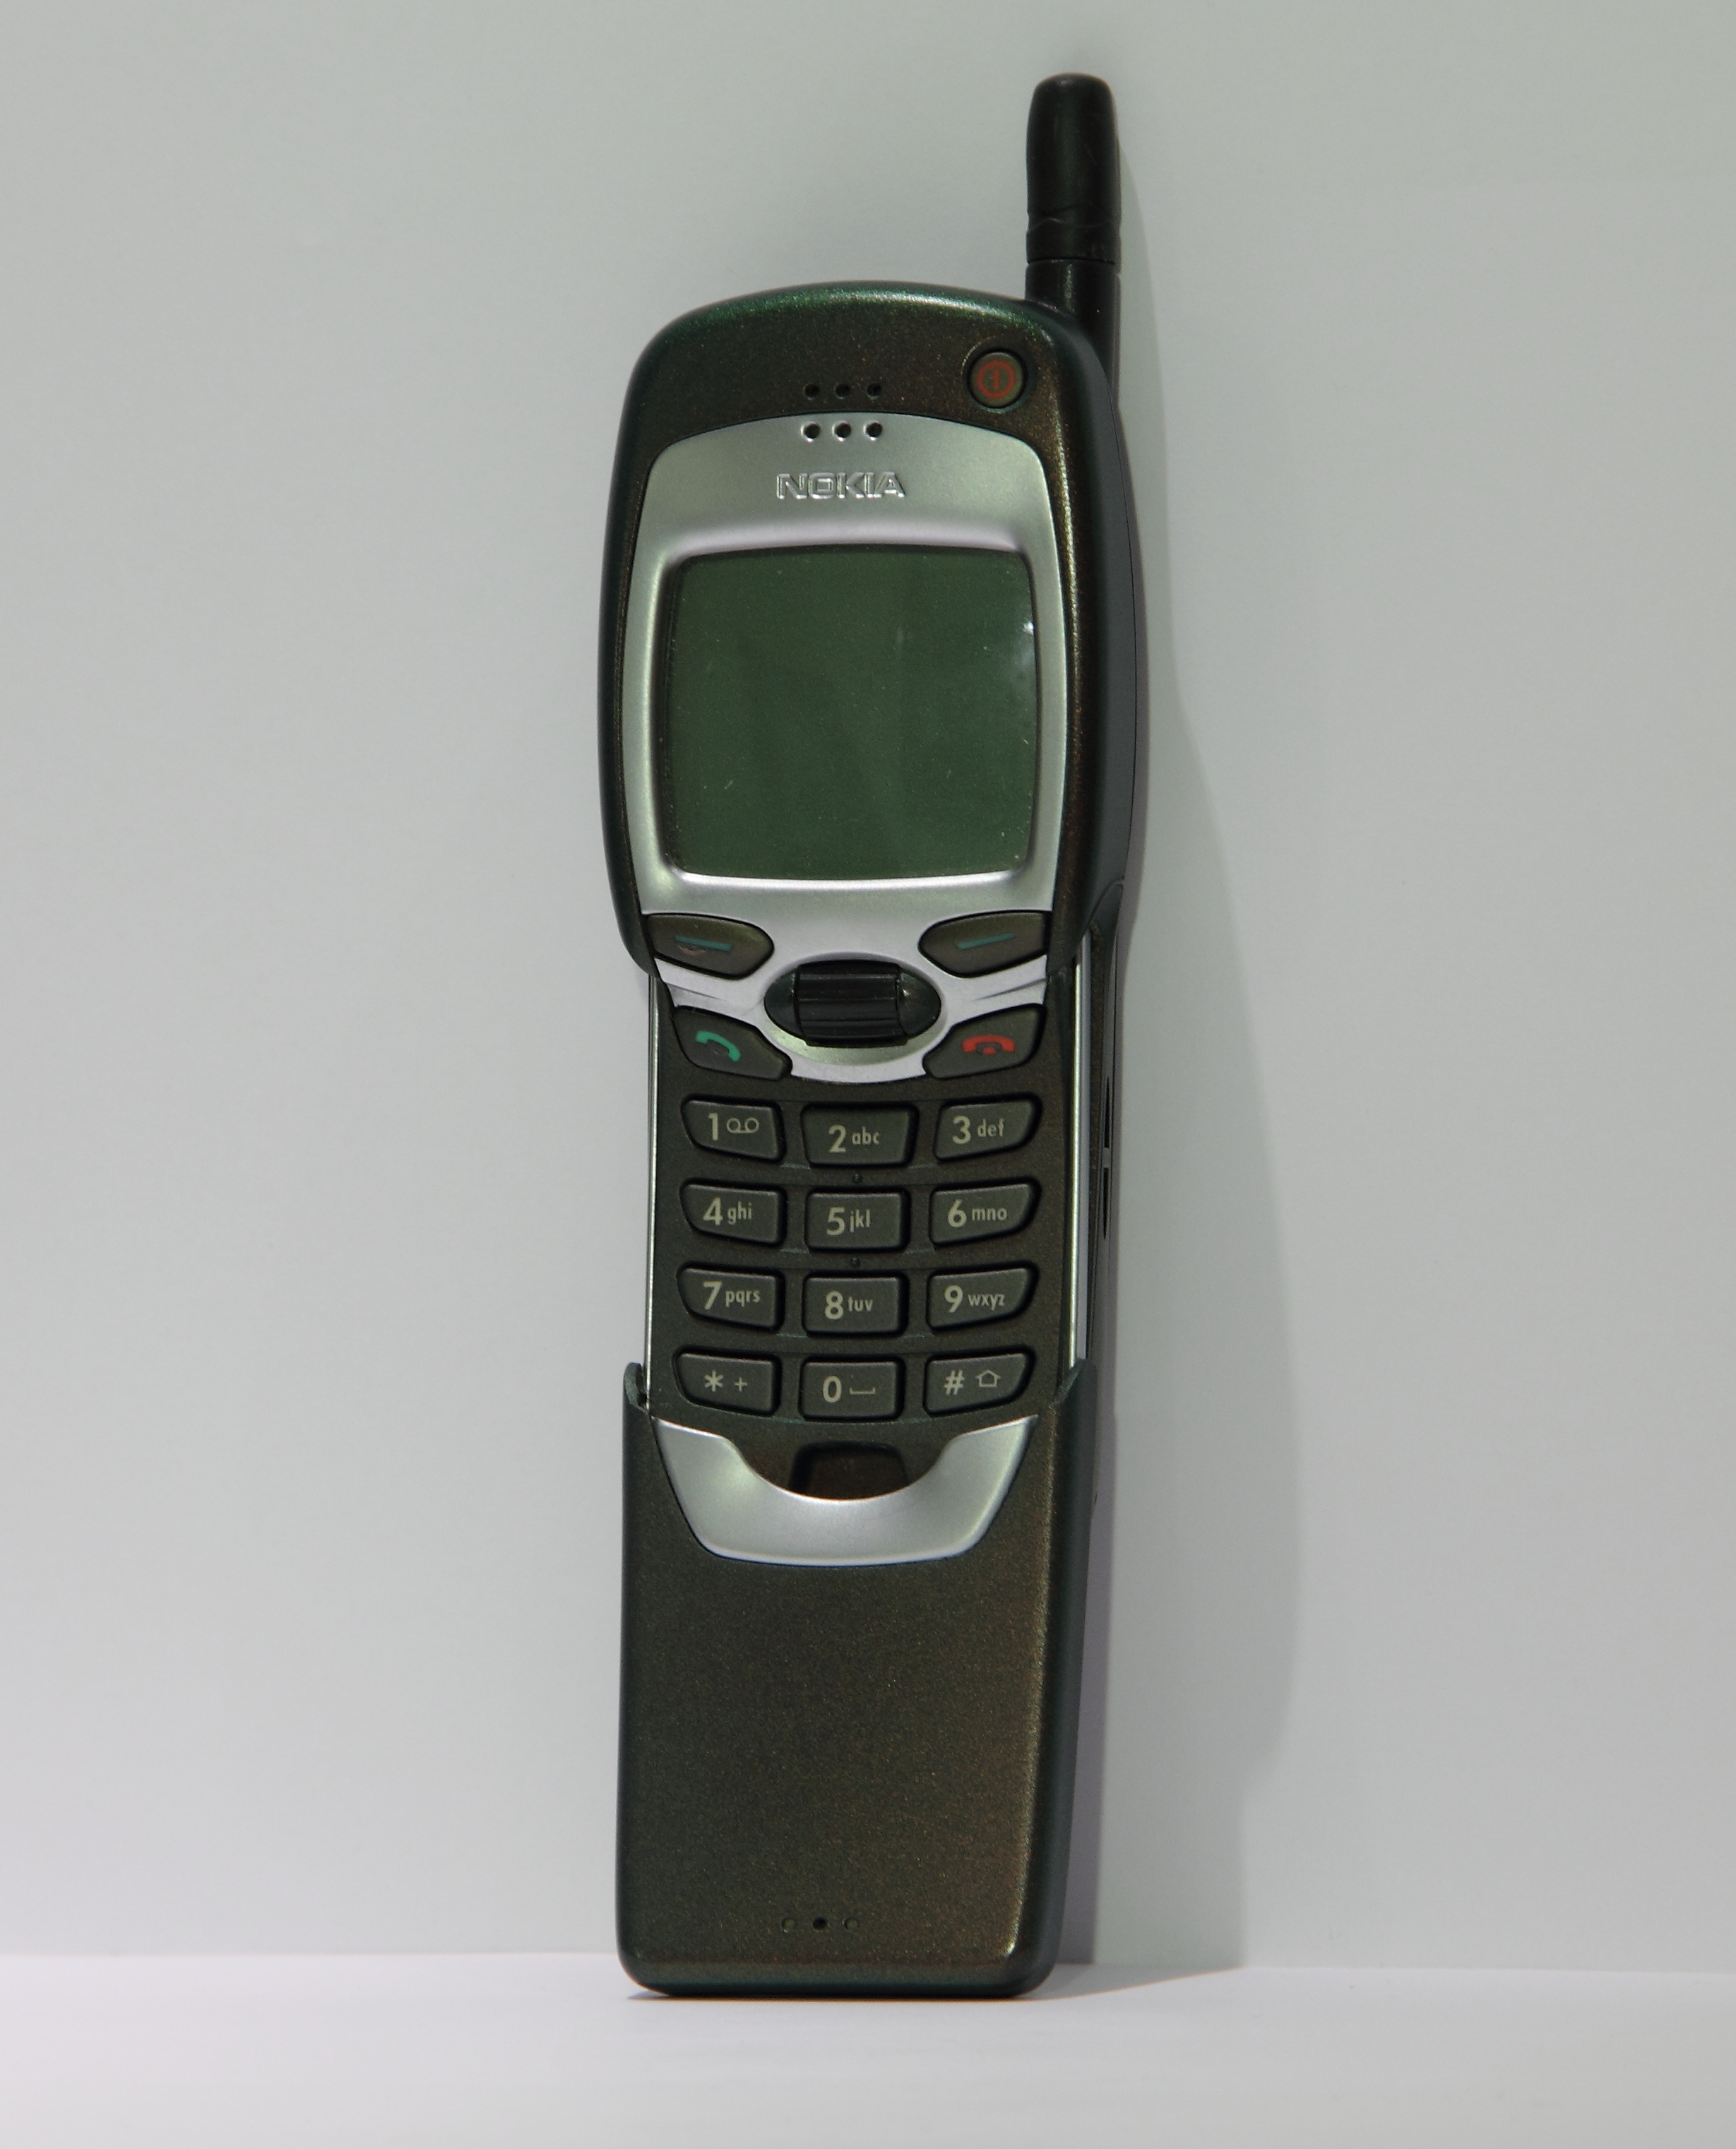 Фото старого нокиа. Нокиа 7110. Nokia 7110 4g. Nokia 7110 1999. Nokia 7110 Matrix.